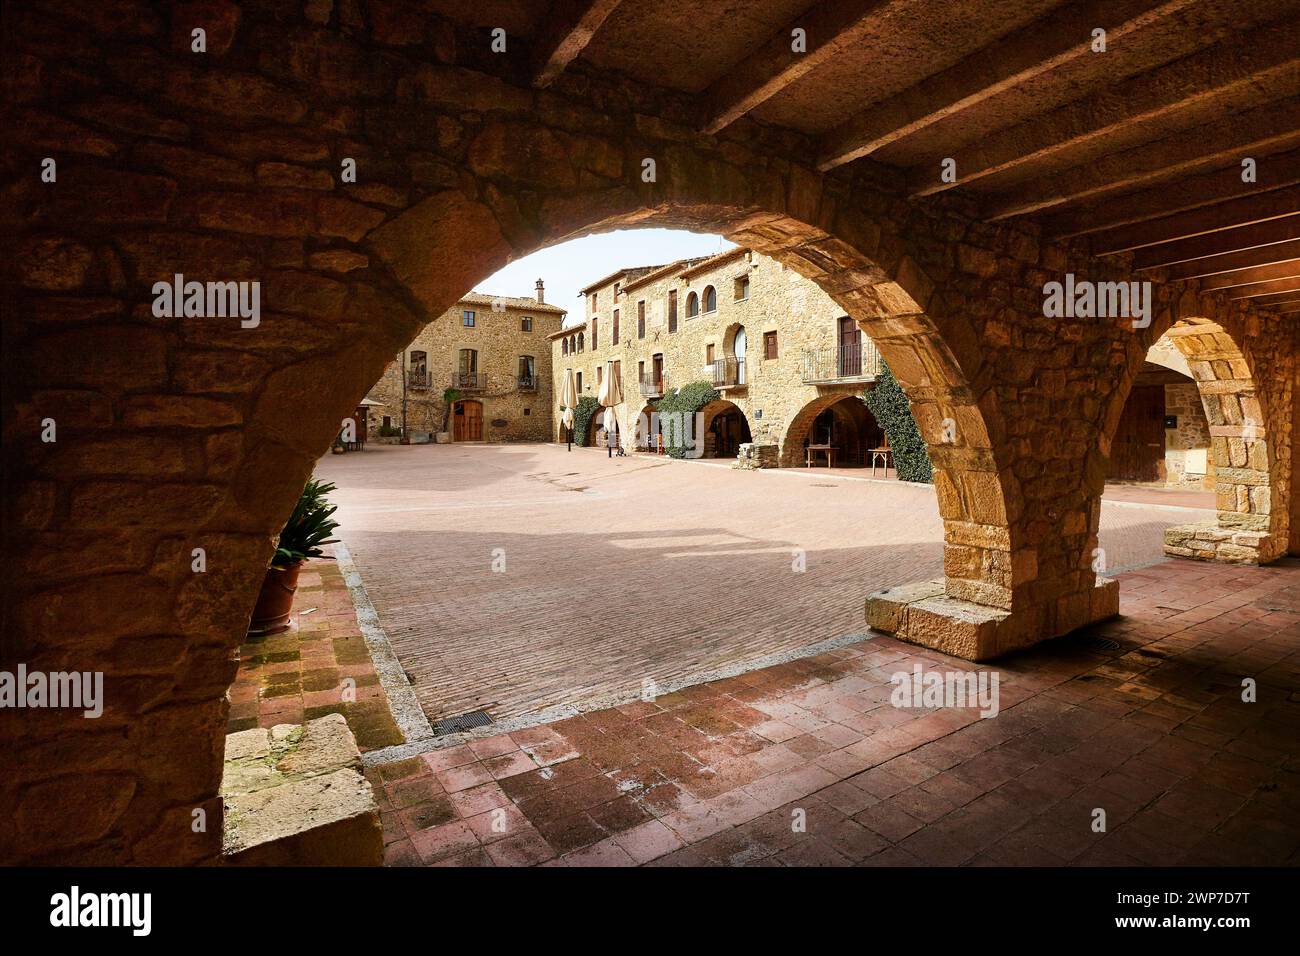 Malerisches mittelalterliches Dorf Monells. Girona, Costa Brava. Katalonien. Spanien Stockfoto